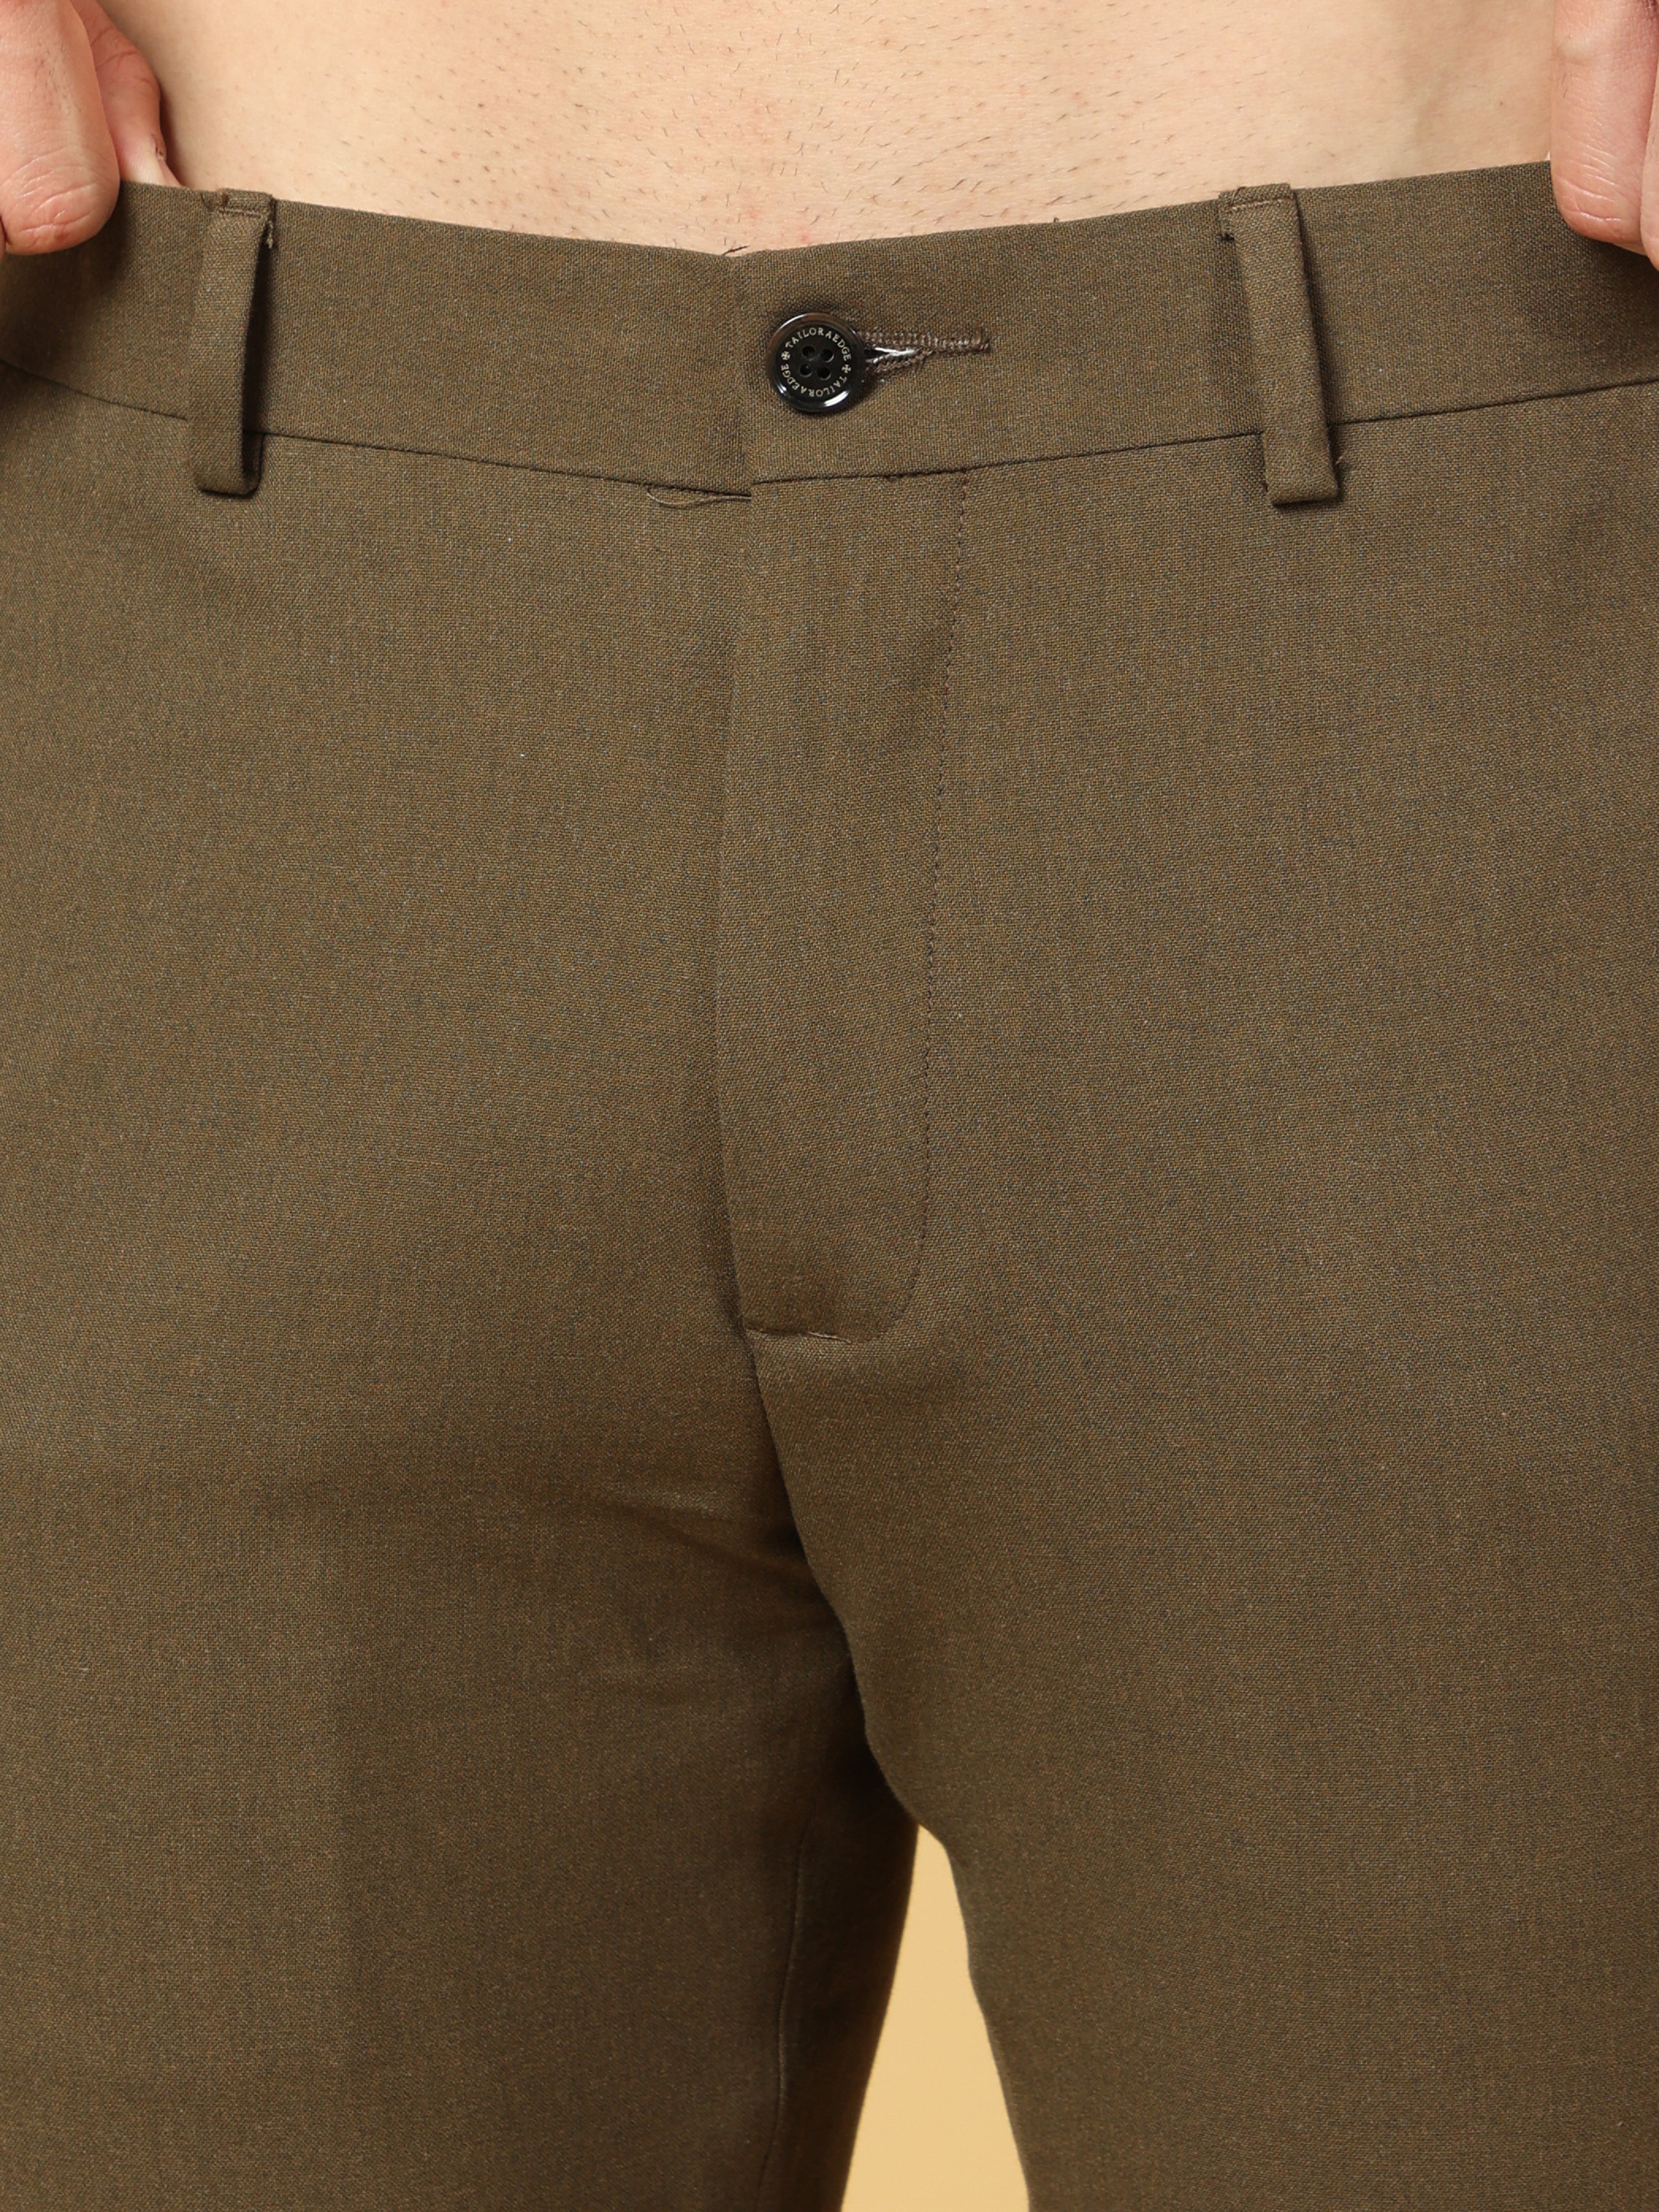 Essential Dark Olive Sleek Formal Trouser